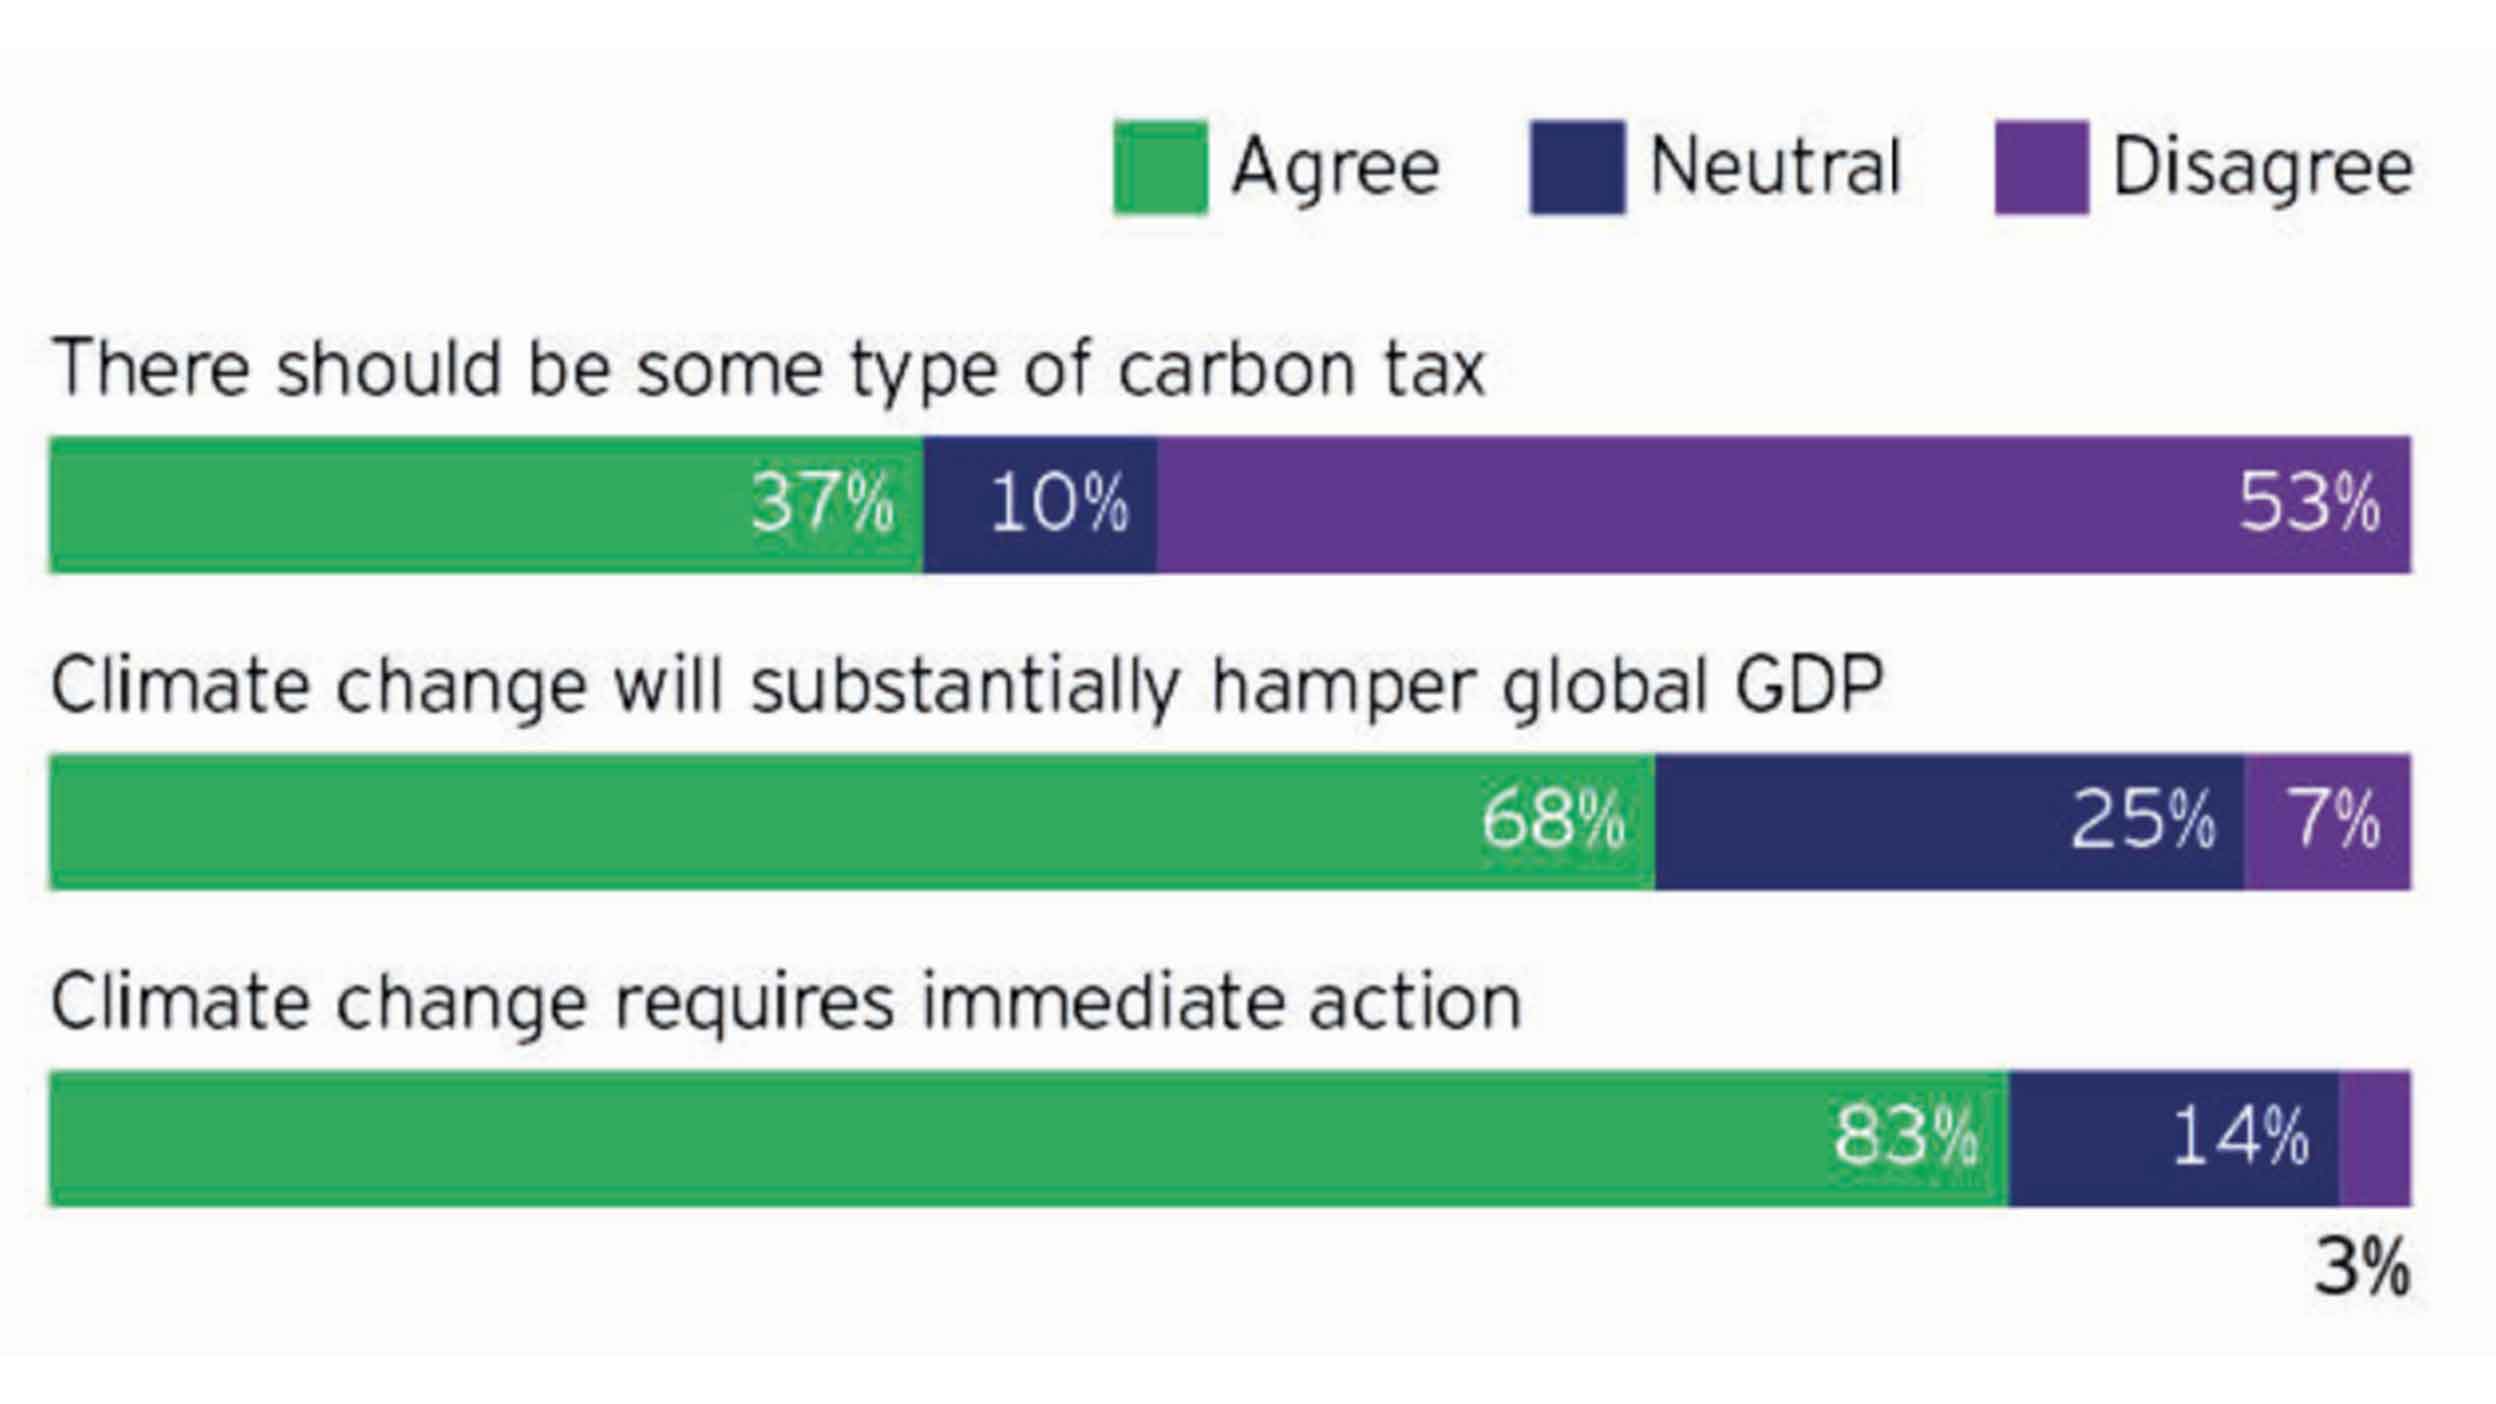 Attitude towards climate change (% citations)